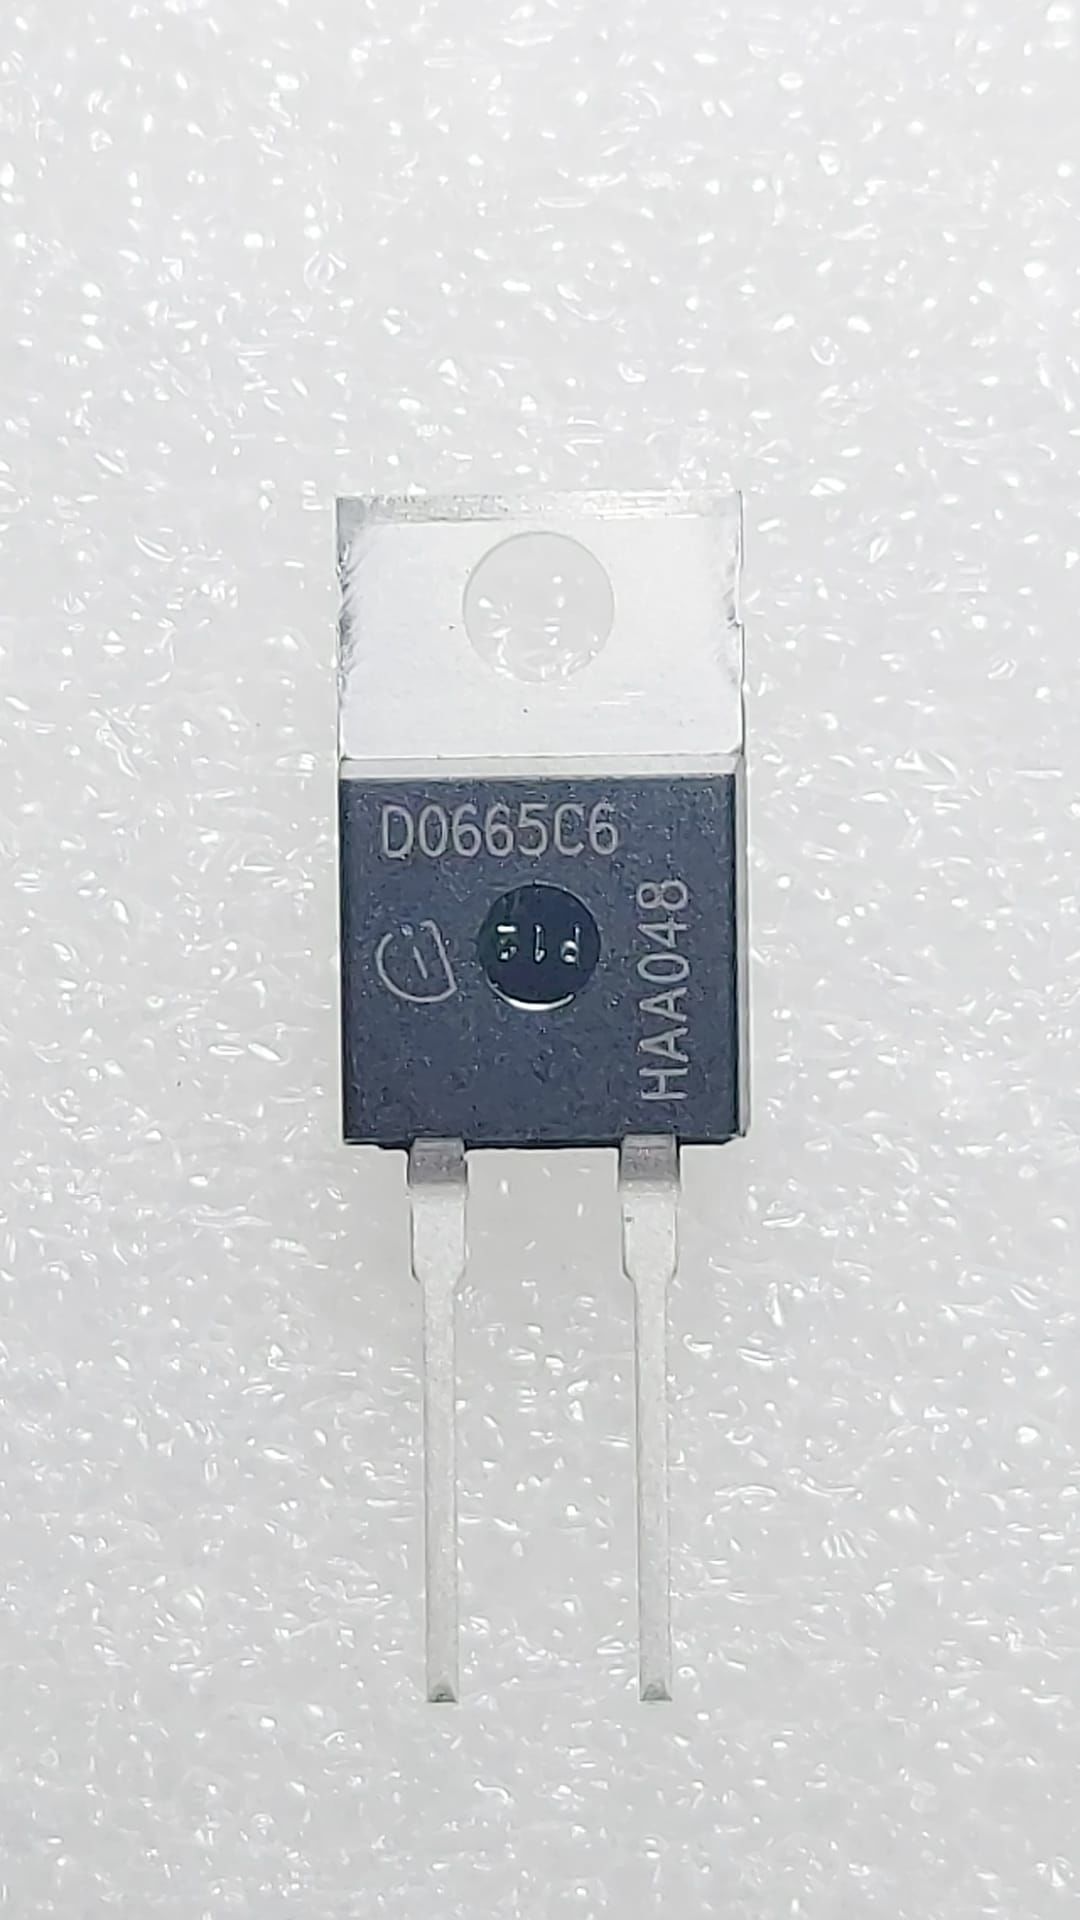 IDH06G65C6  (D0665C6)